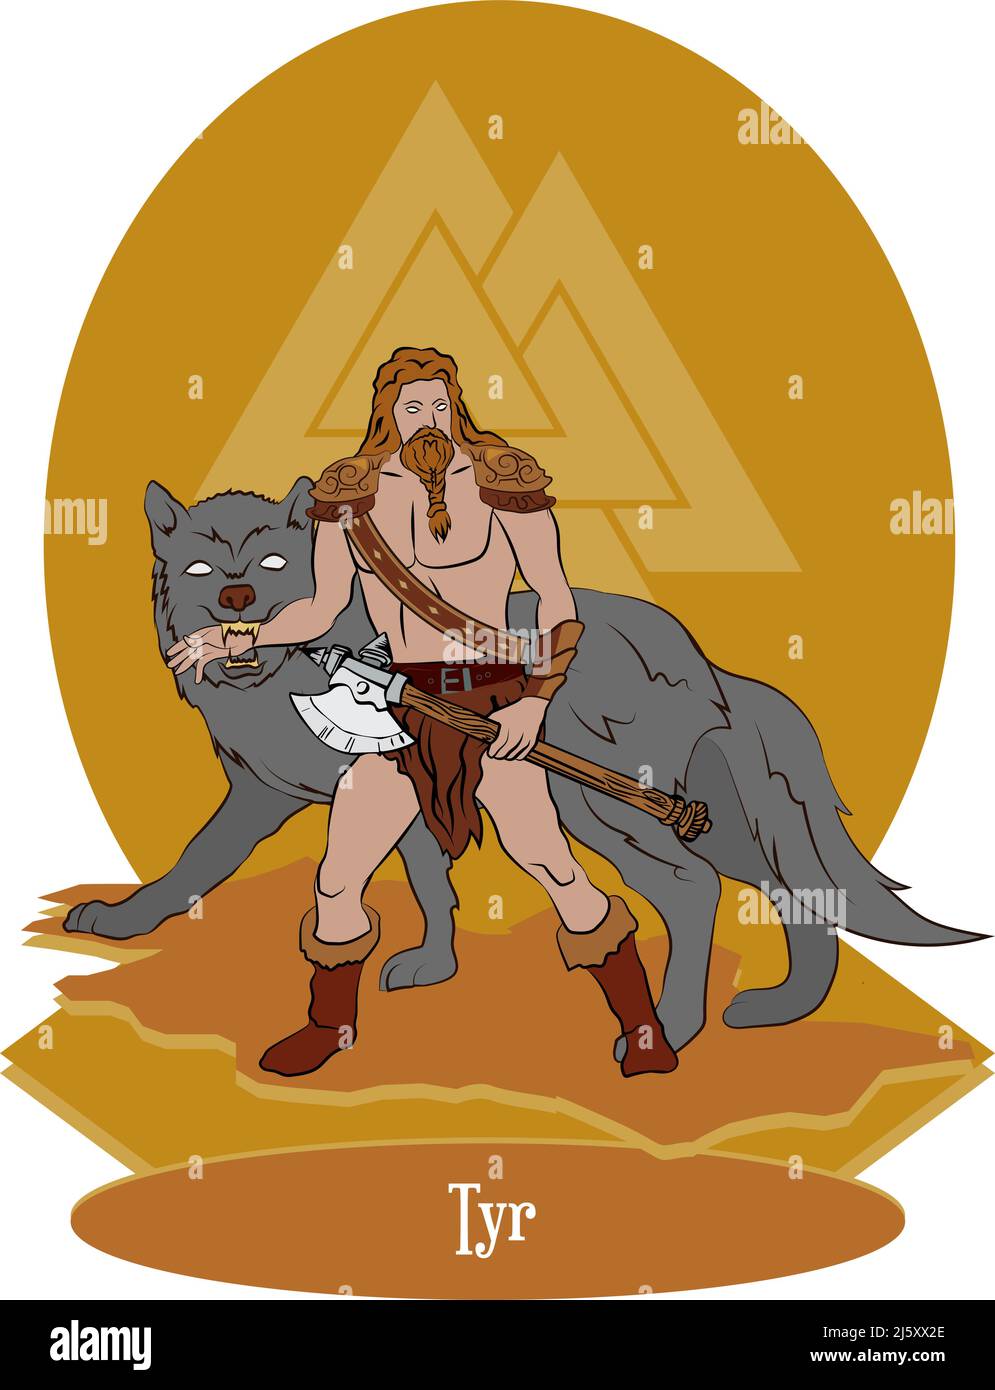 Vecteur d'illustration isolé de Norse ou de dieu mythique scandinave, Tyr Illustration de Vecteur